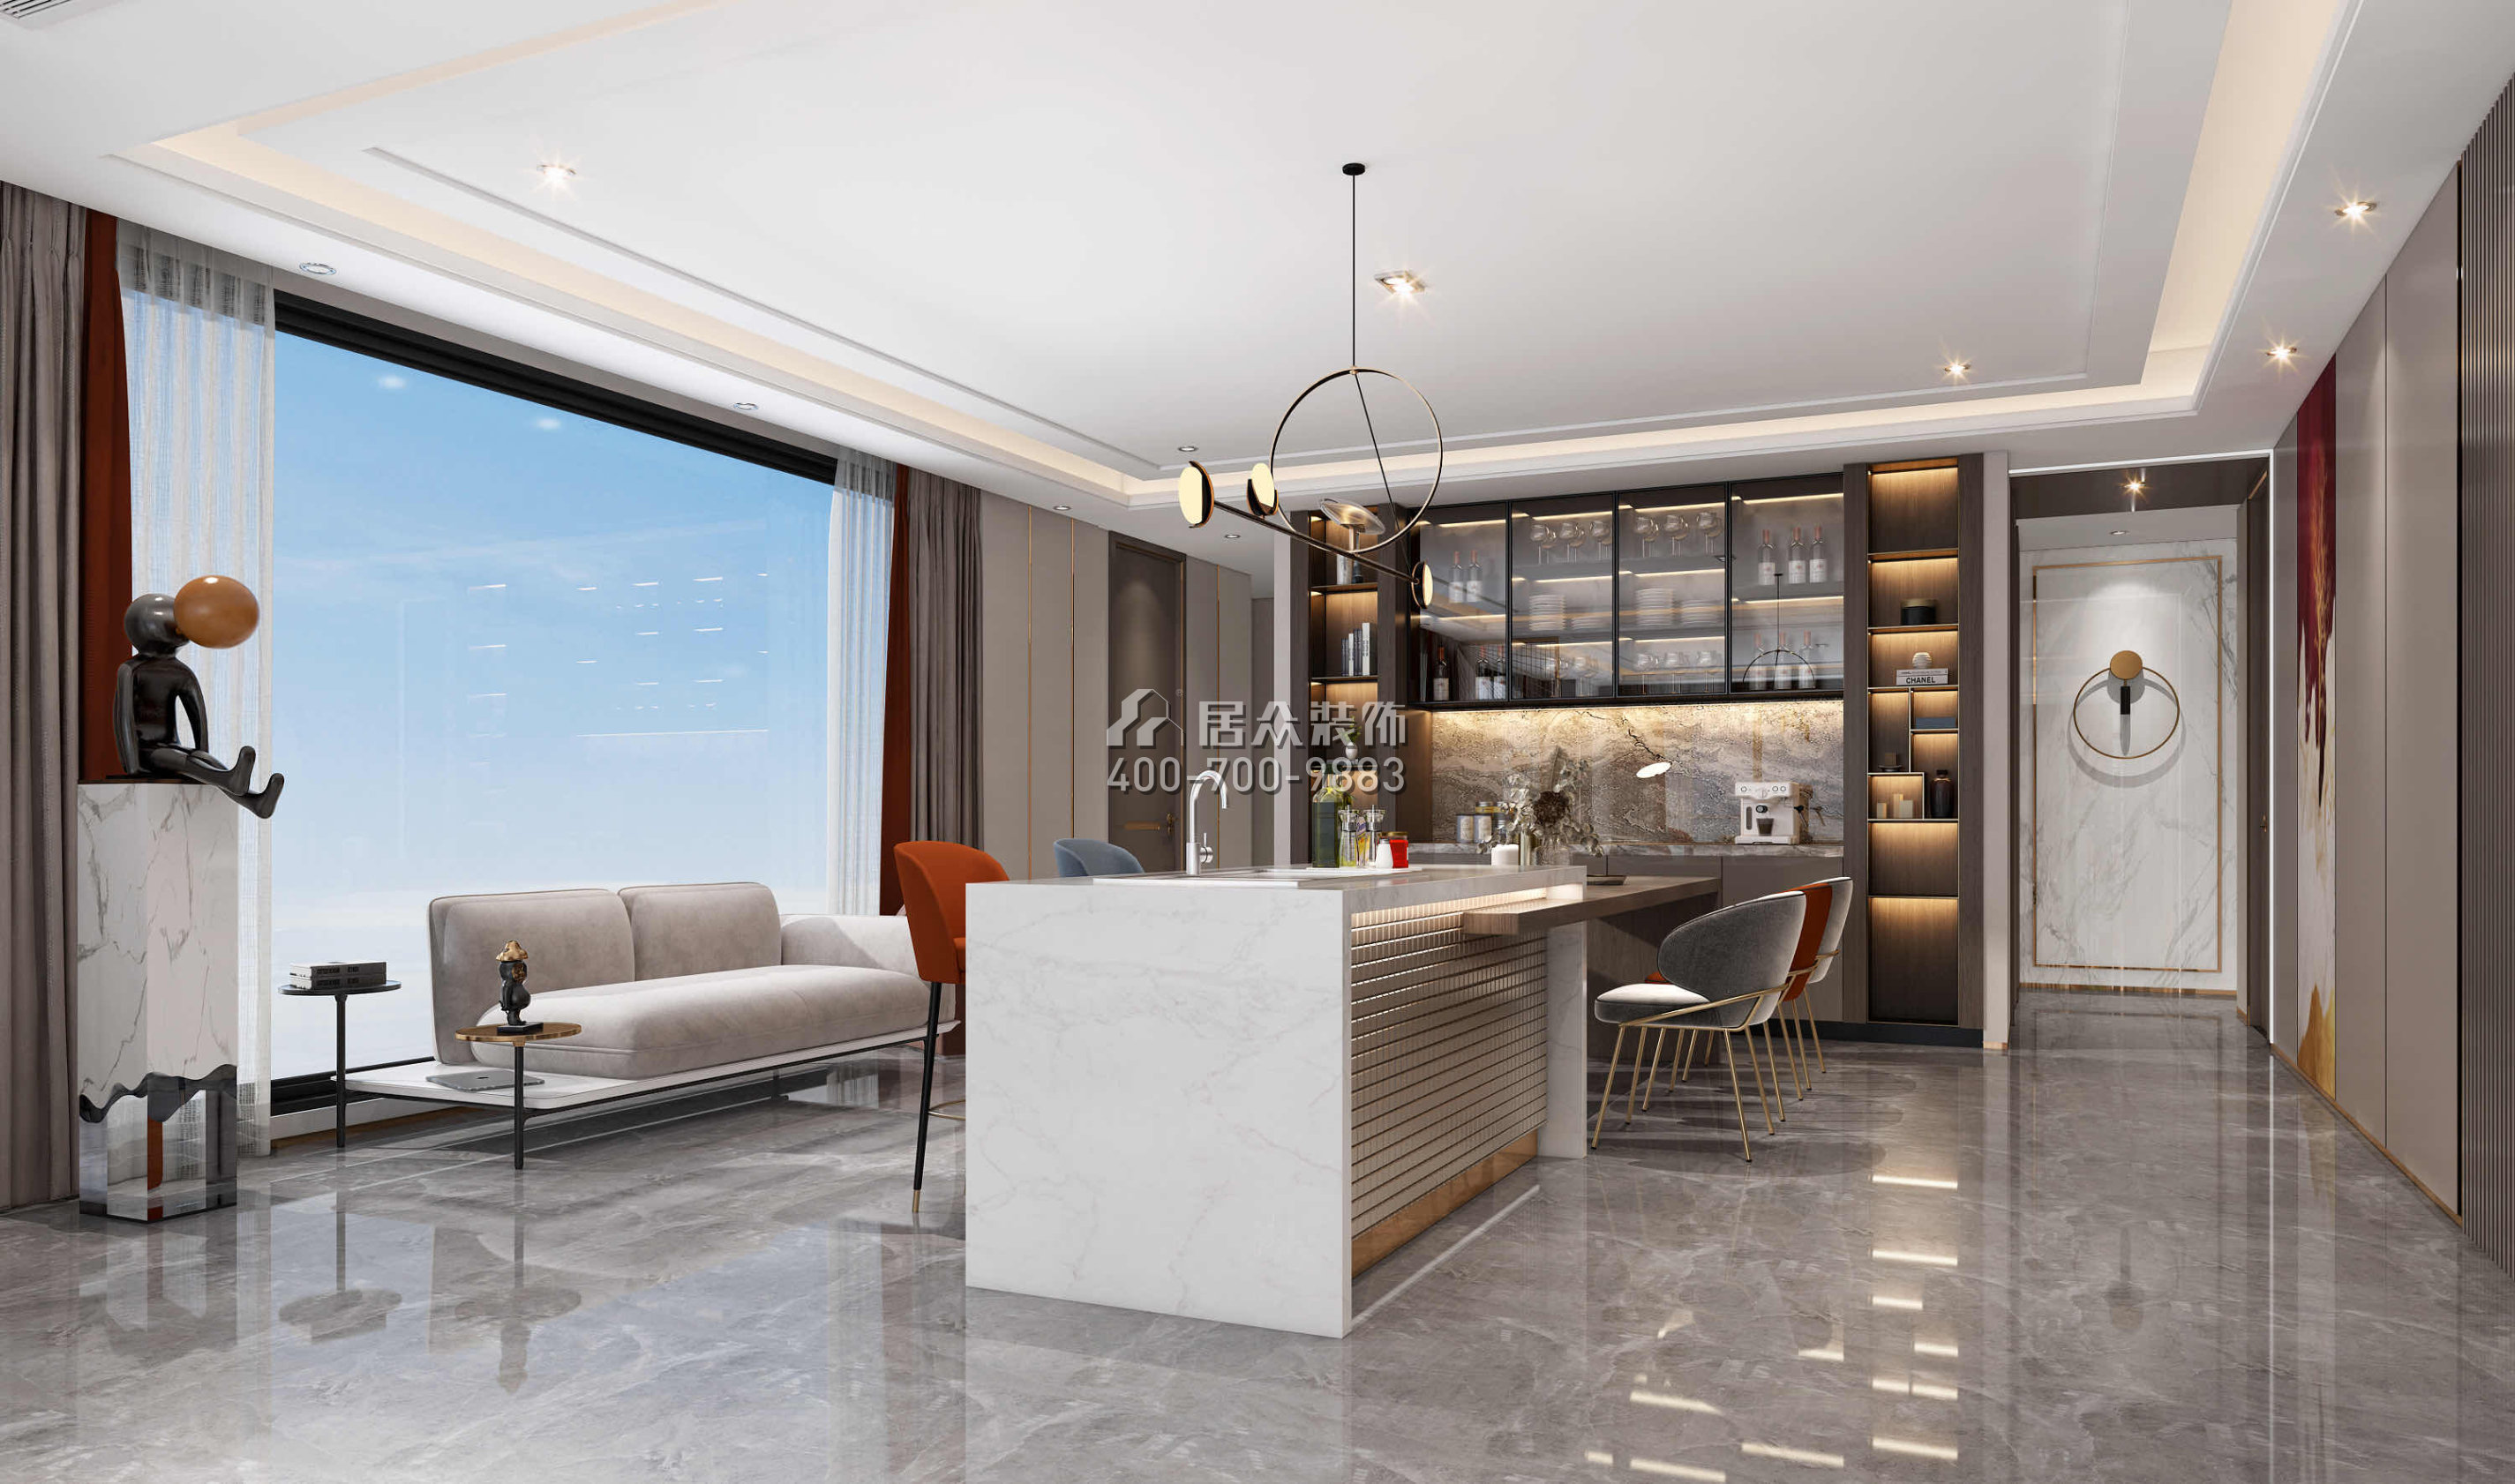 天鵝堡370平方米現代簡約風格平層戶型家庭吧臺裝修效果圖